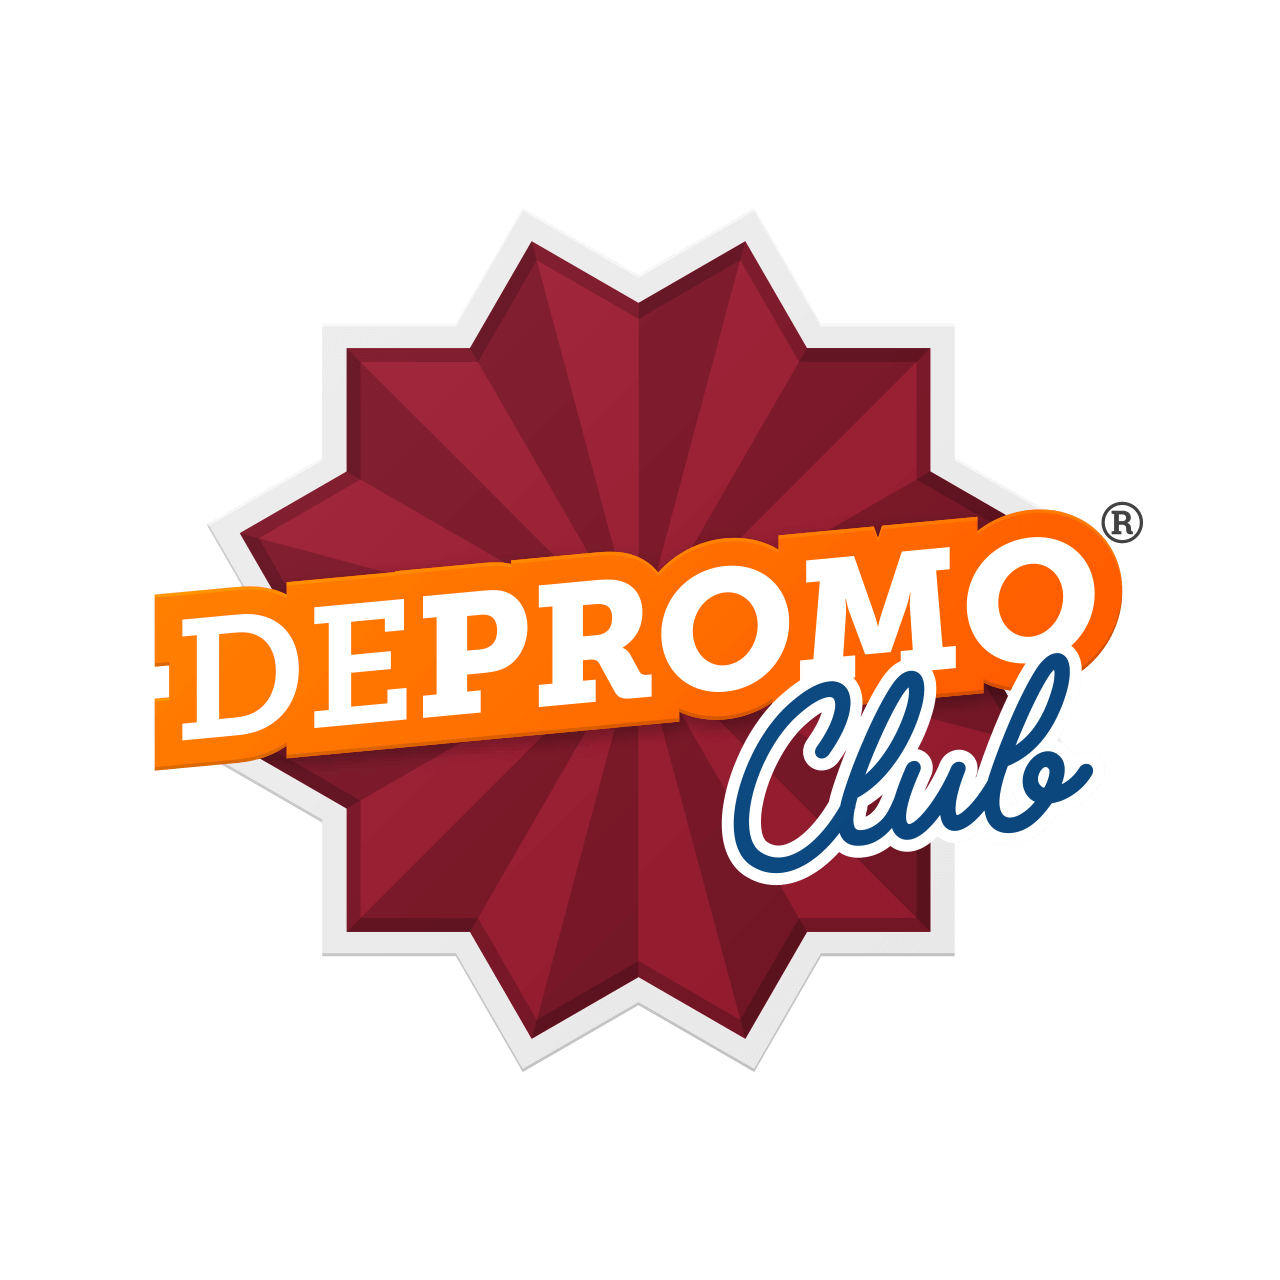 Depromo Club® | depromo.club